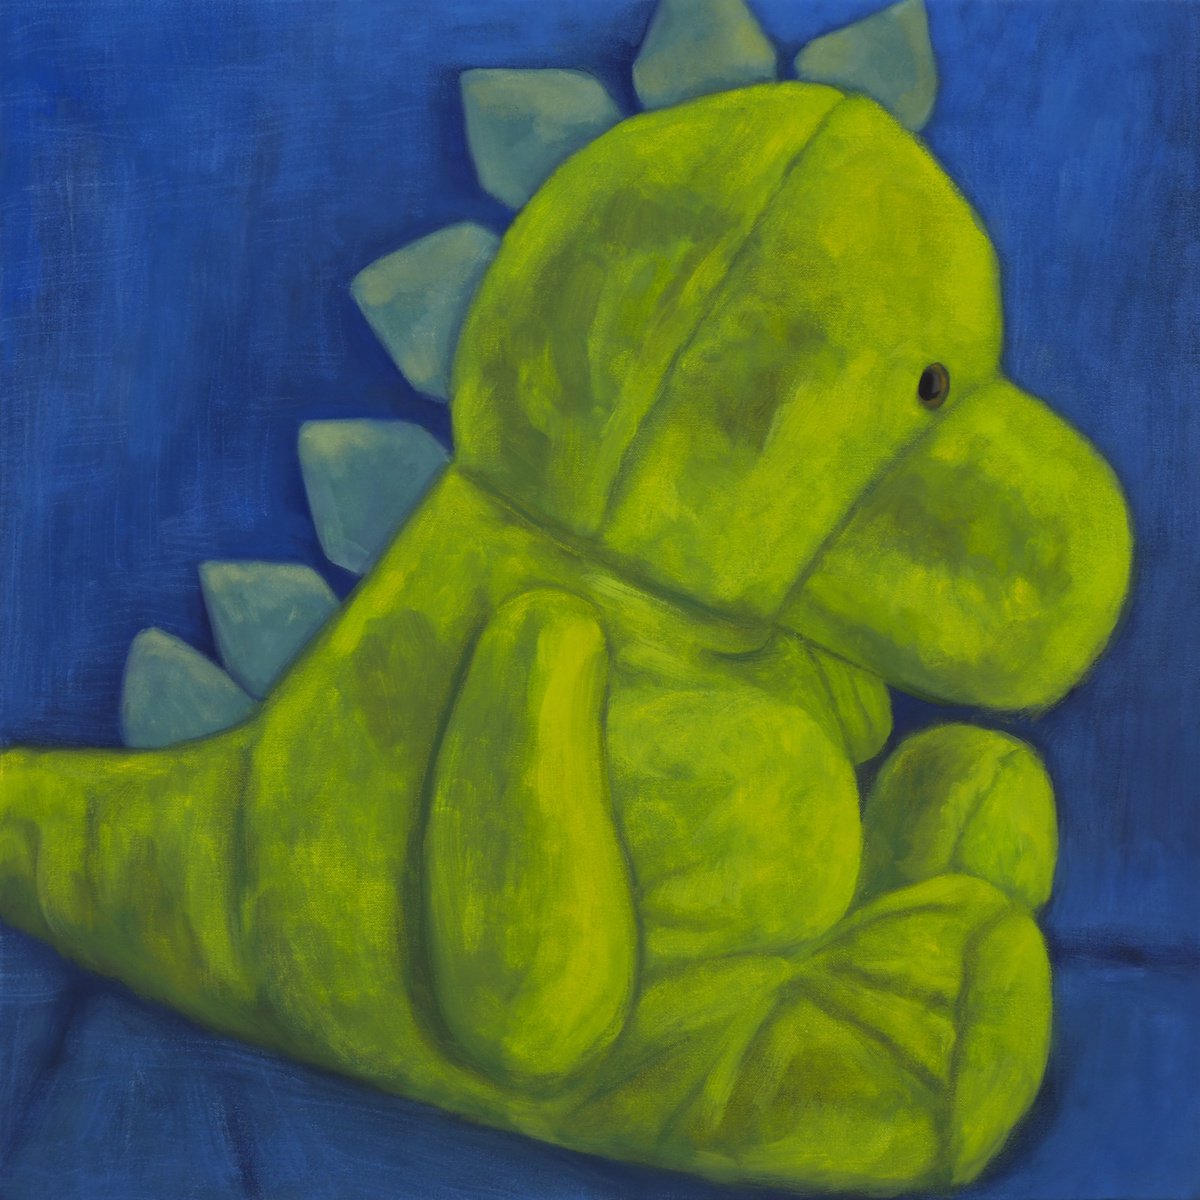 Dinosaur by Seth Feriano